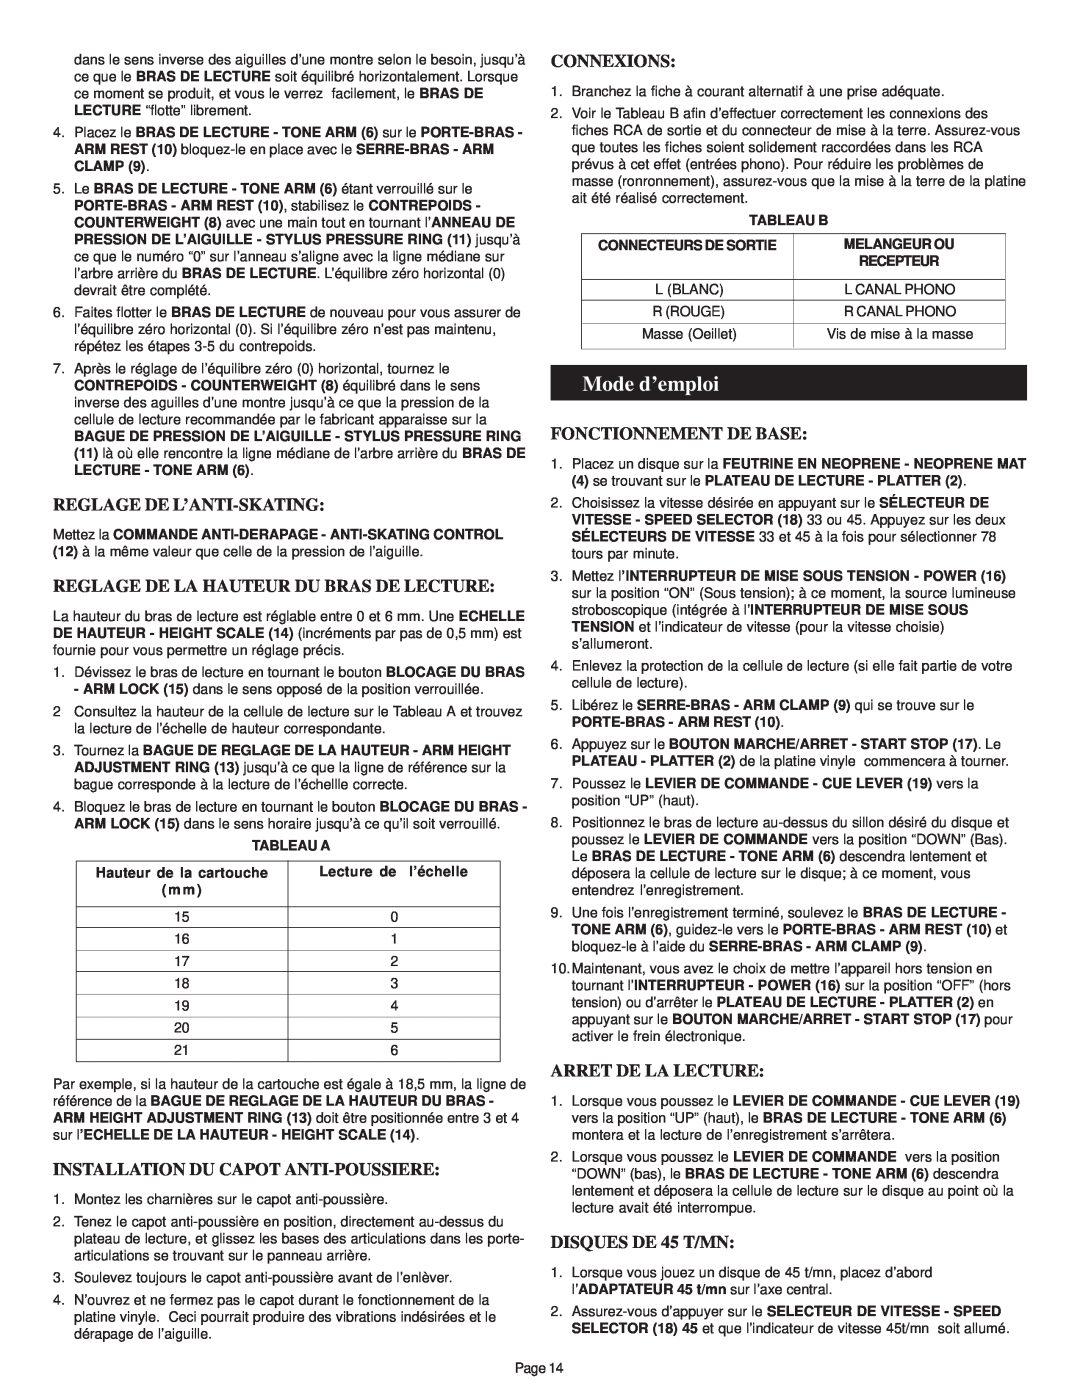 Gemini SA-2400 manual Mode d’emploi, Reglage De L’Anti-Skating, Reglage De La Hauteur Du Bras De Lecture, Connexions 